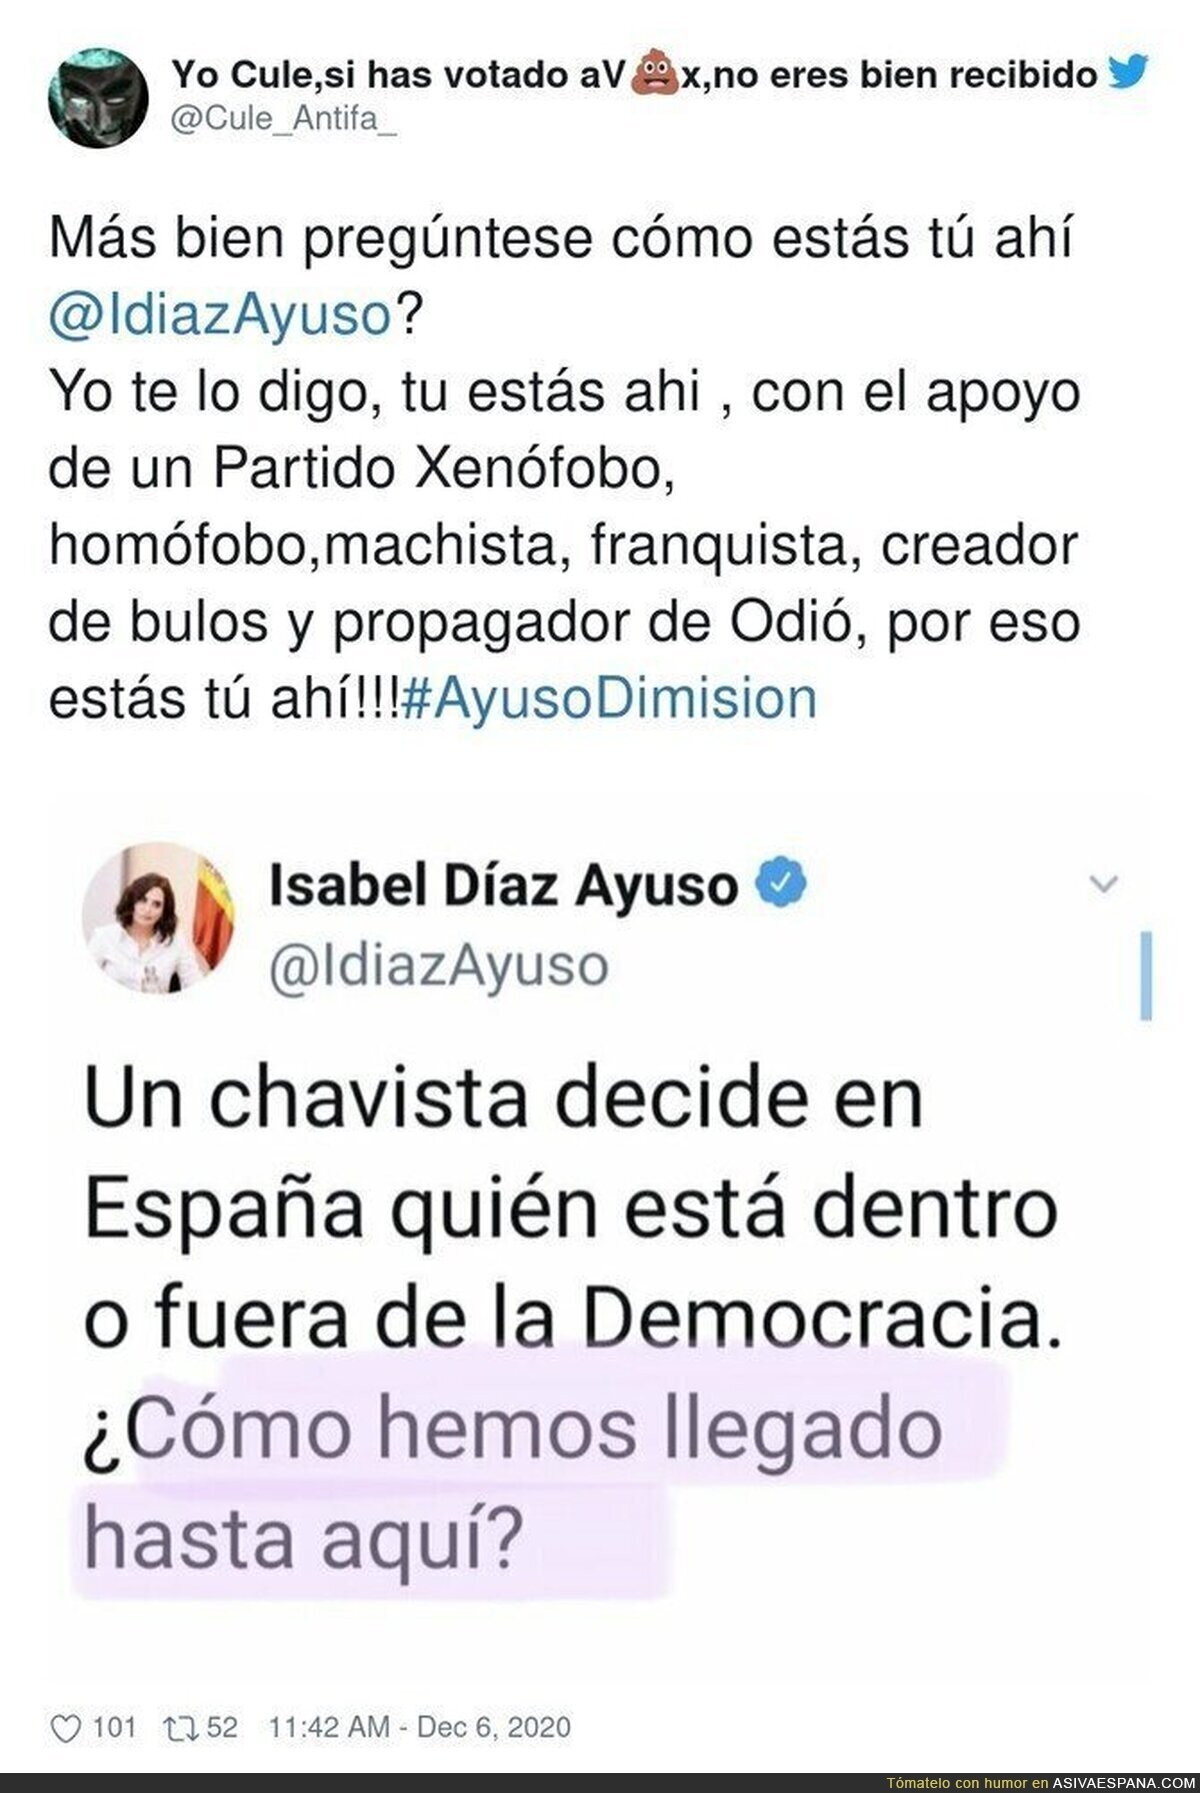 ¿Cómo hemos conseguido tener en Madrid a una persona como Isabel Díaz Ayuso?